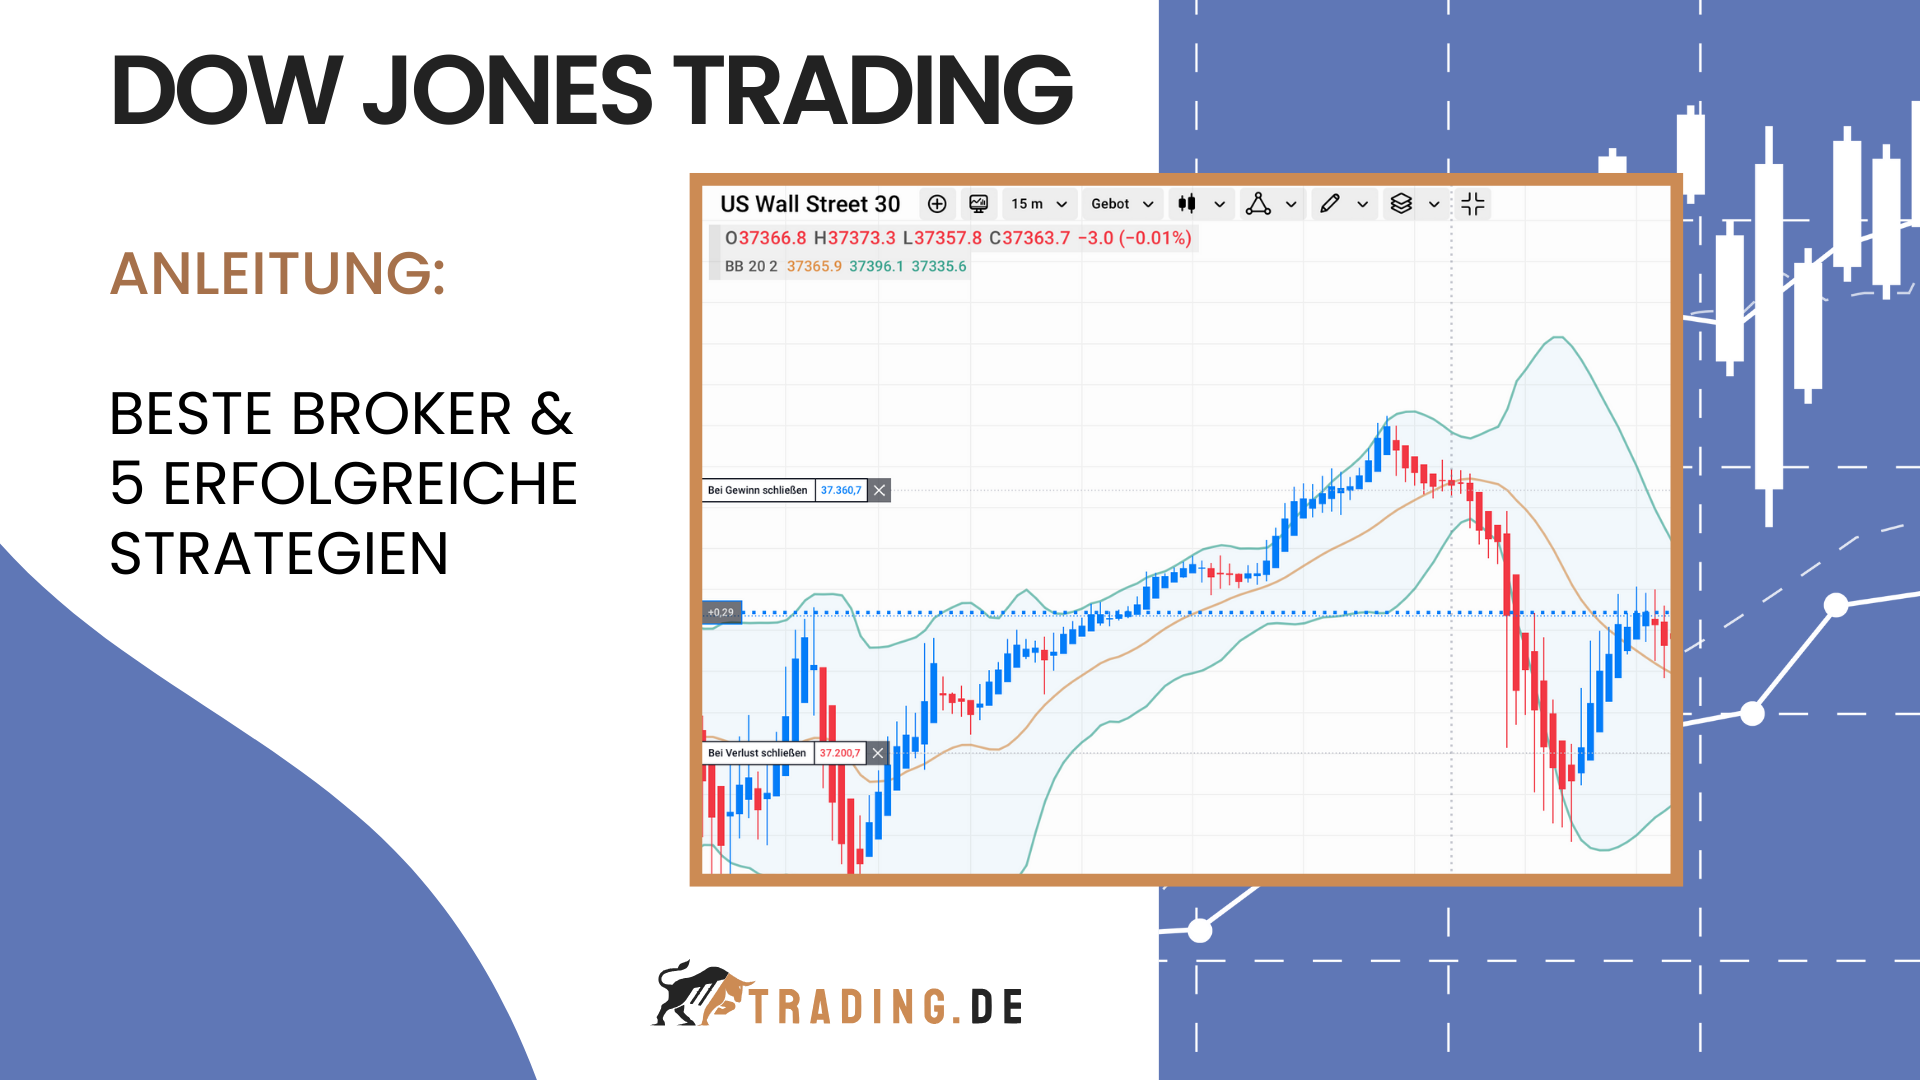 Dow Jones Trading